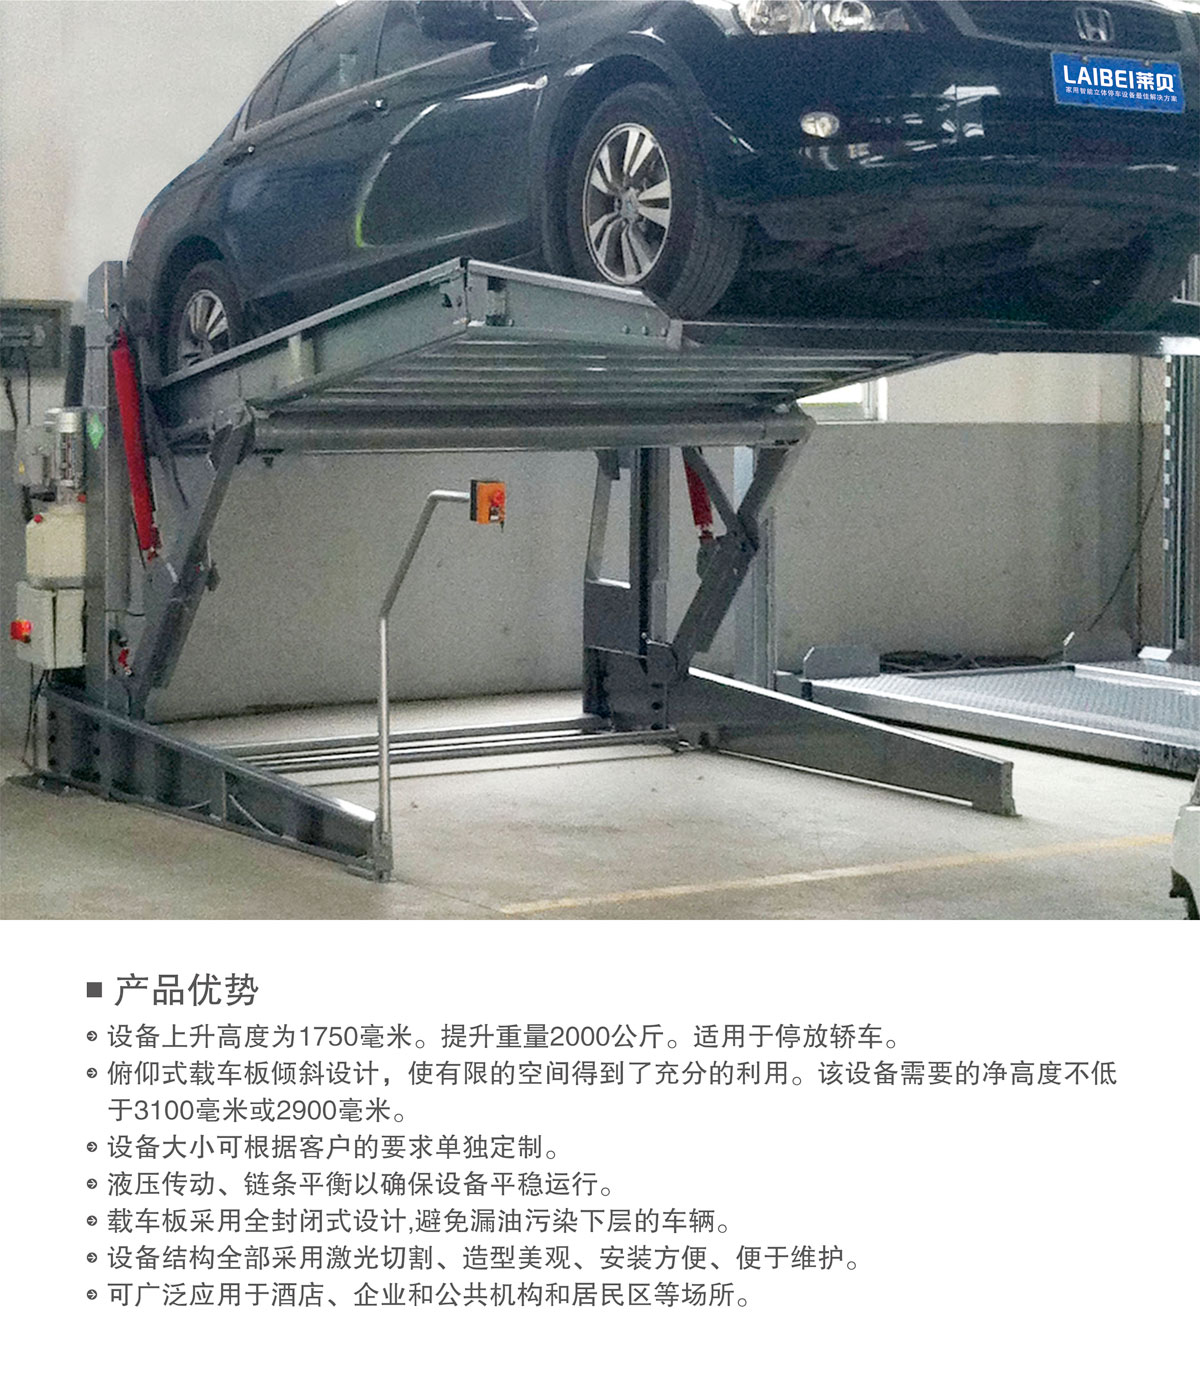 贵阳莱贝PJS俯仰简易升降机械式立体停车库产品优势.jpg